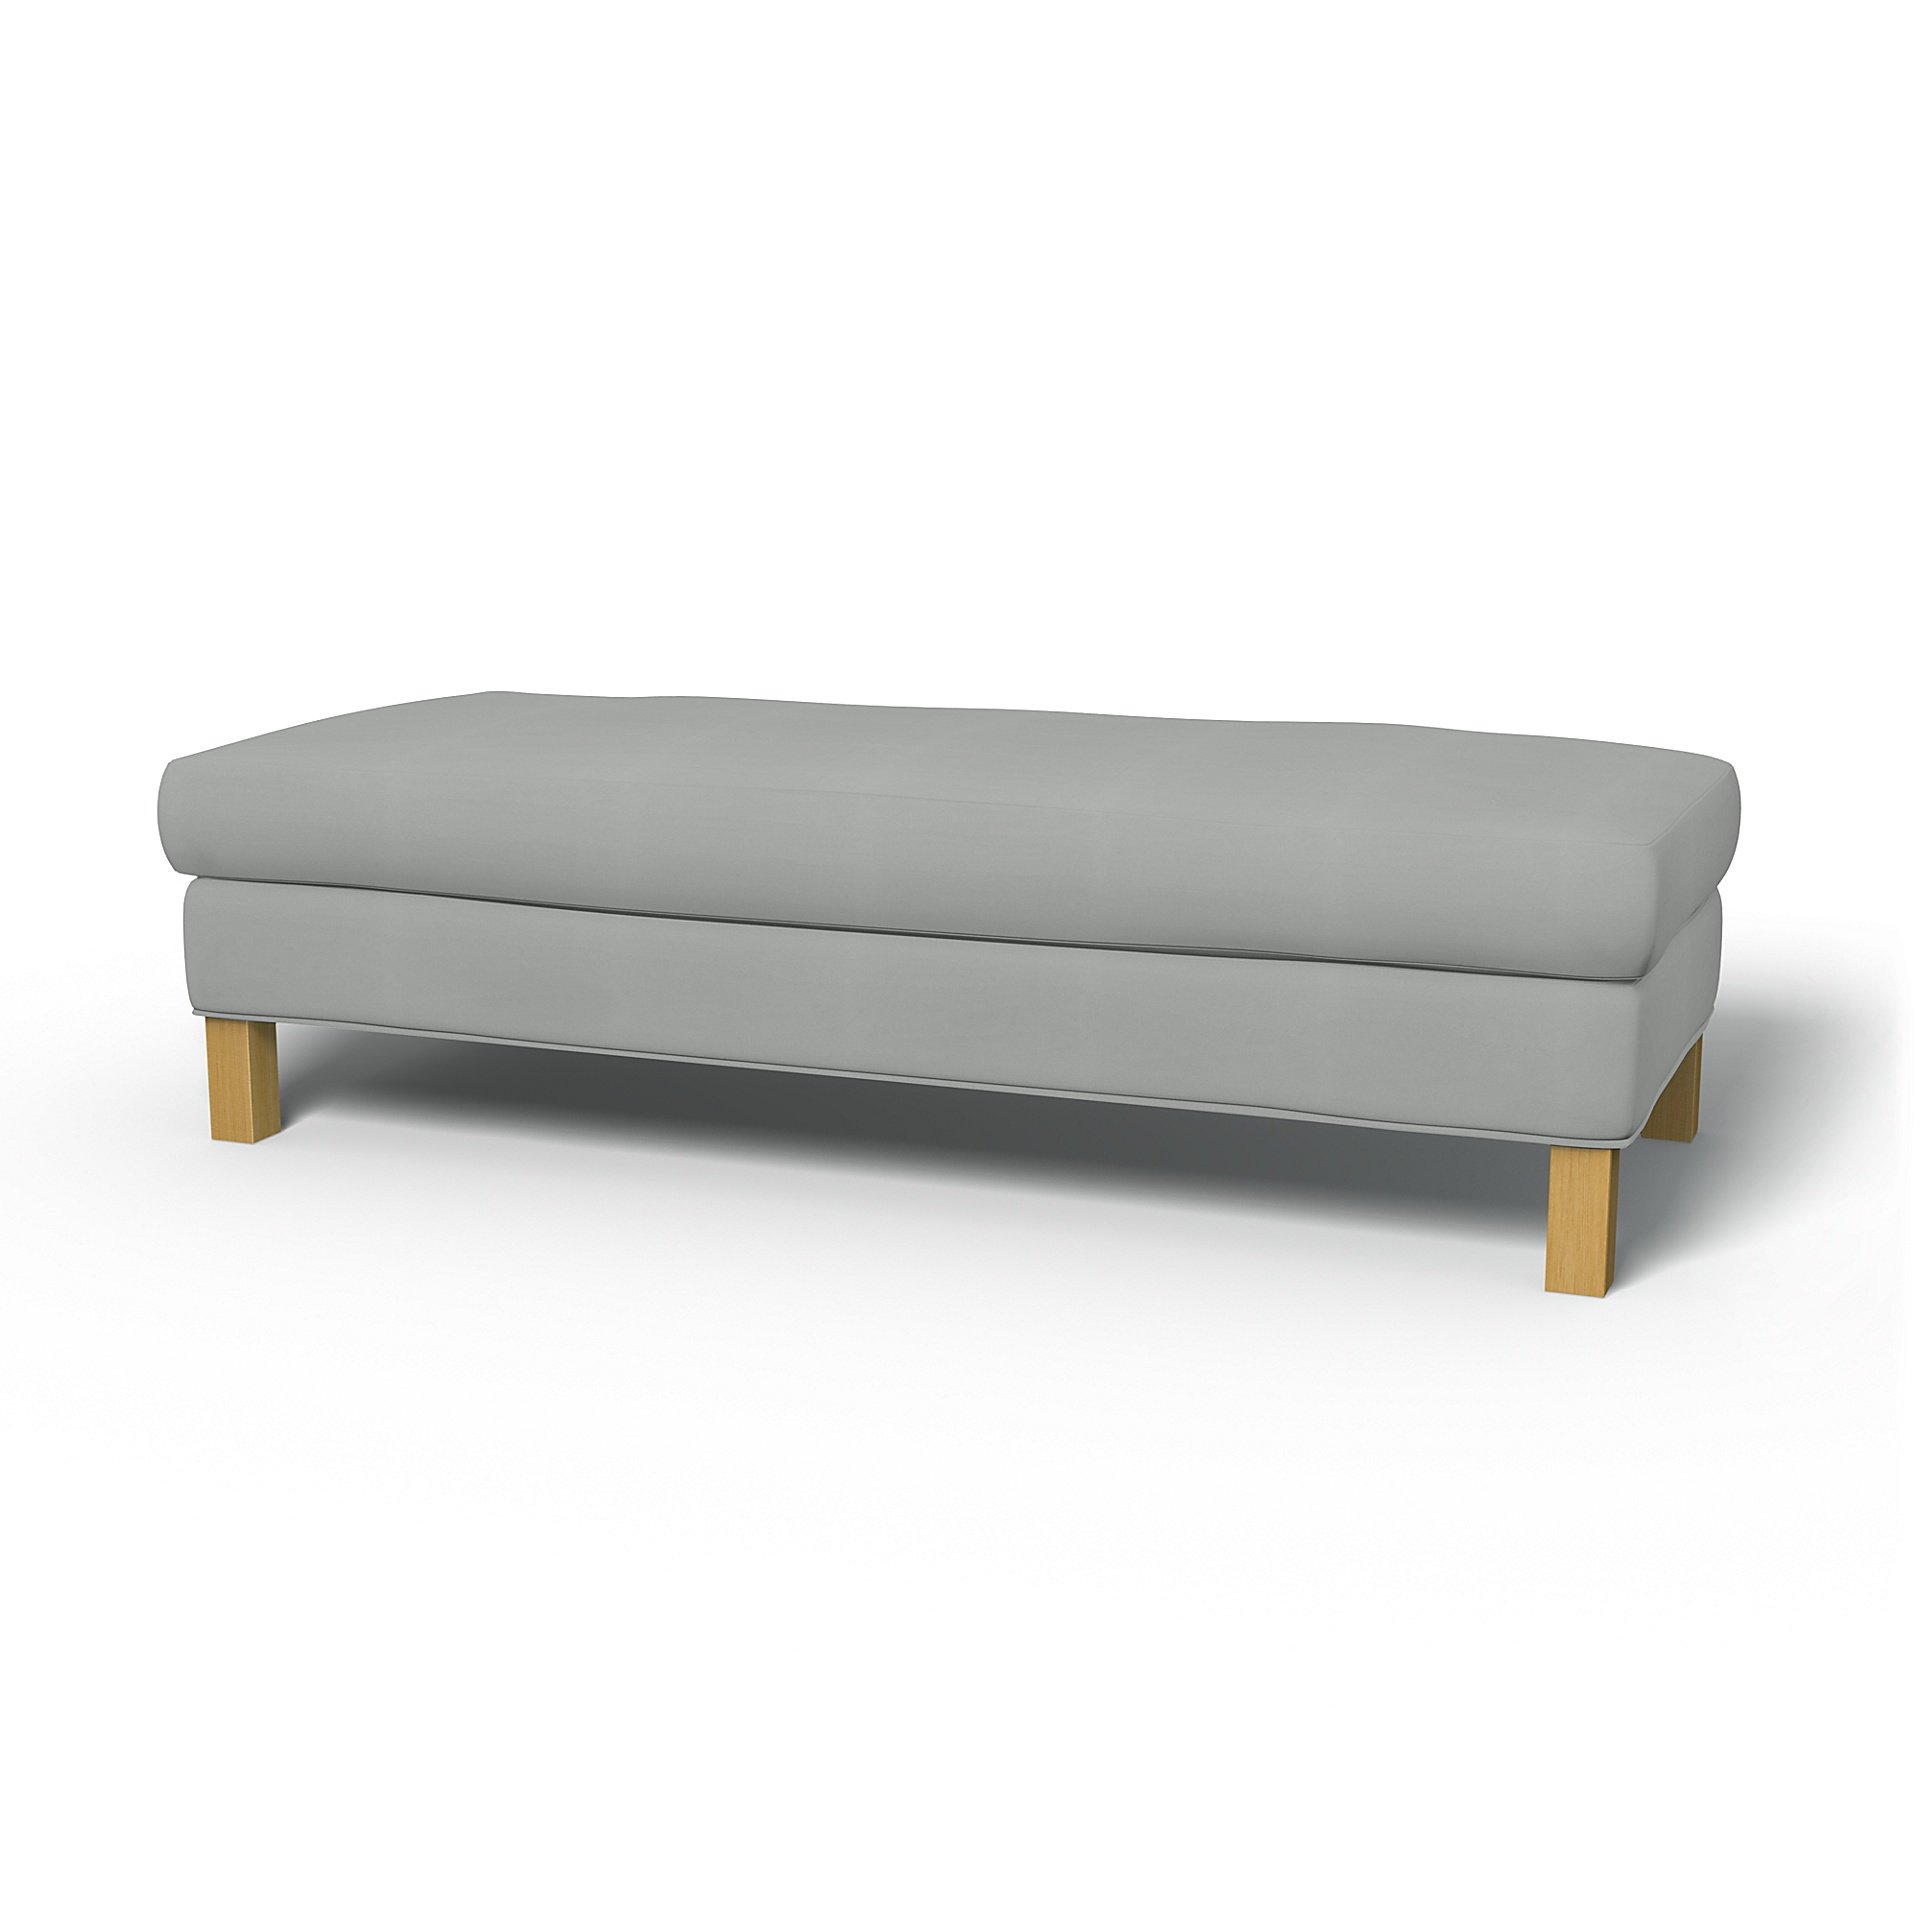 IKEA - Karlanda Bench Cover, Silver Grey, Cotton - Bemz